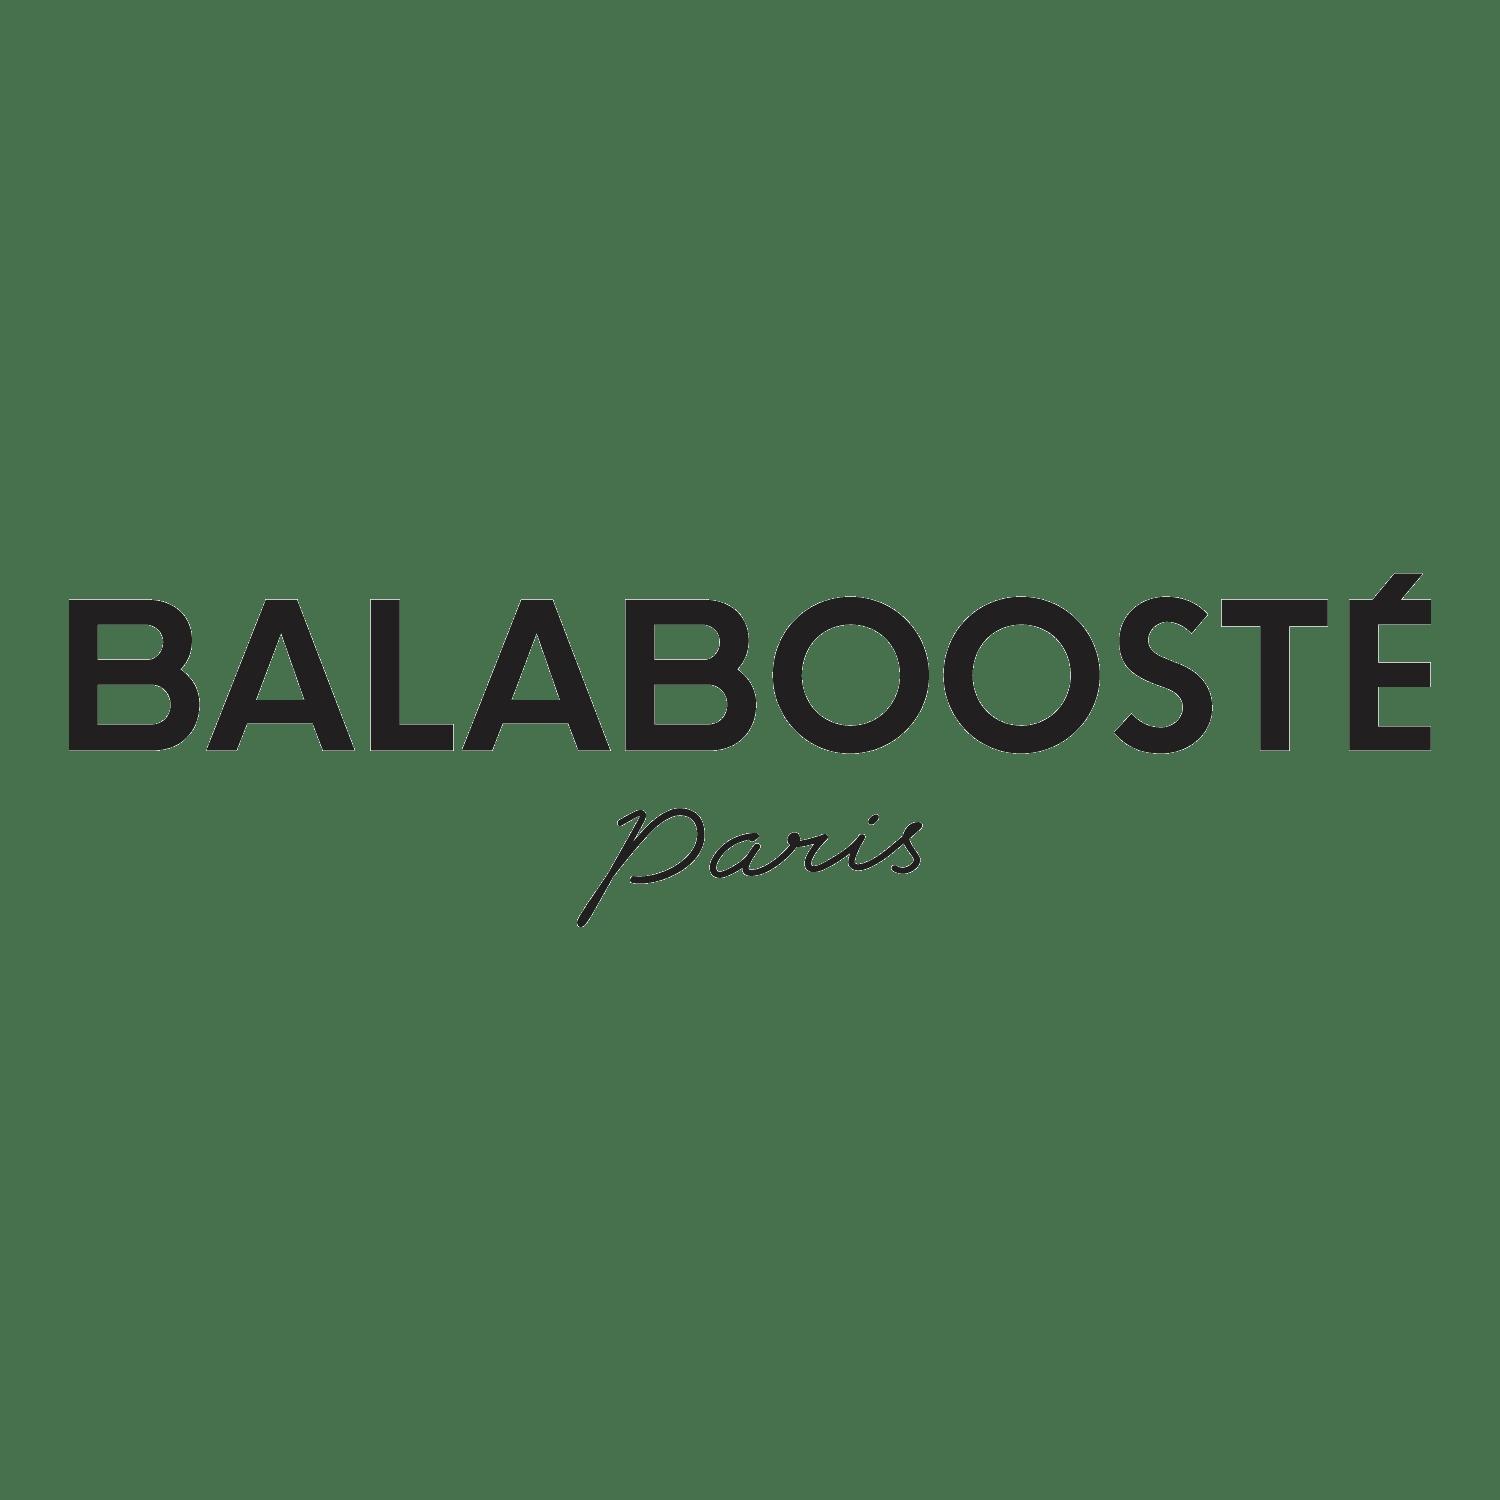 Balaboosté Langon